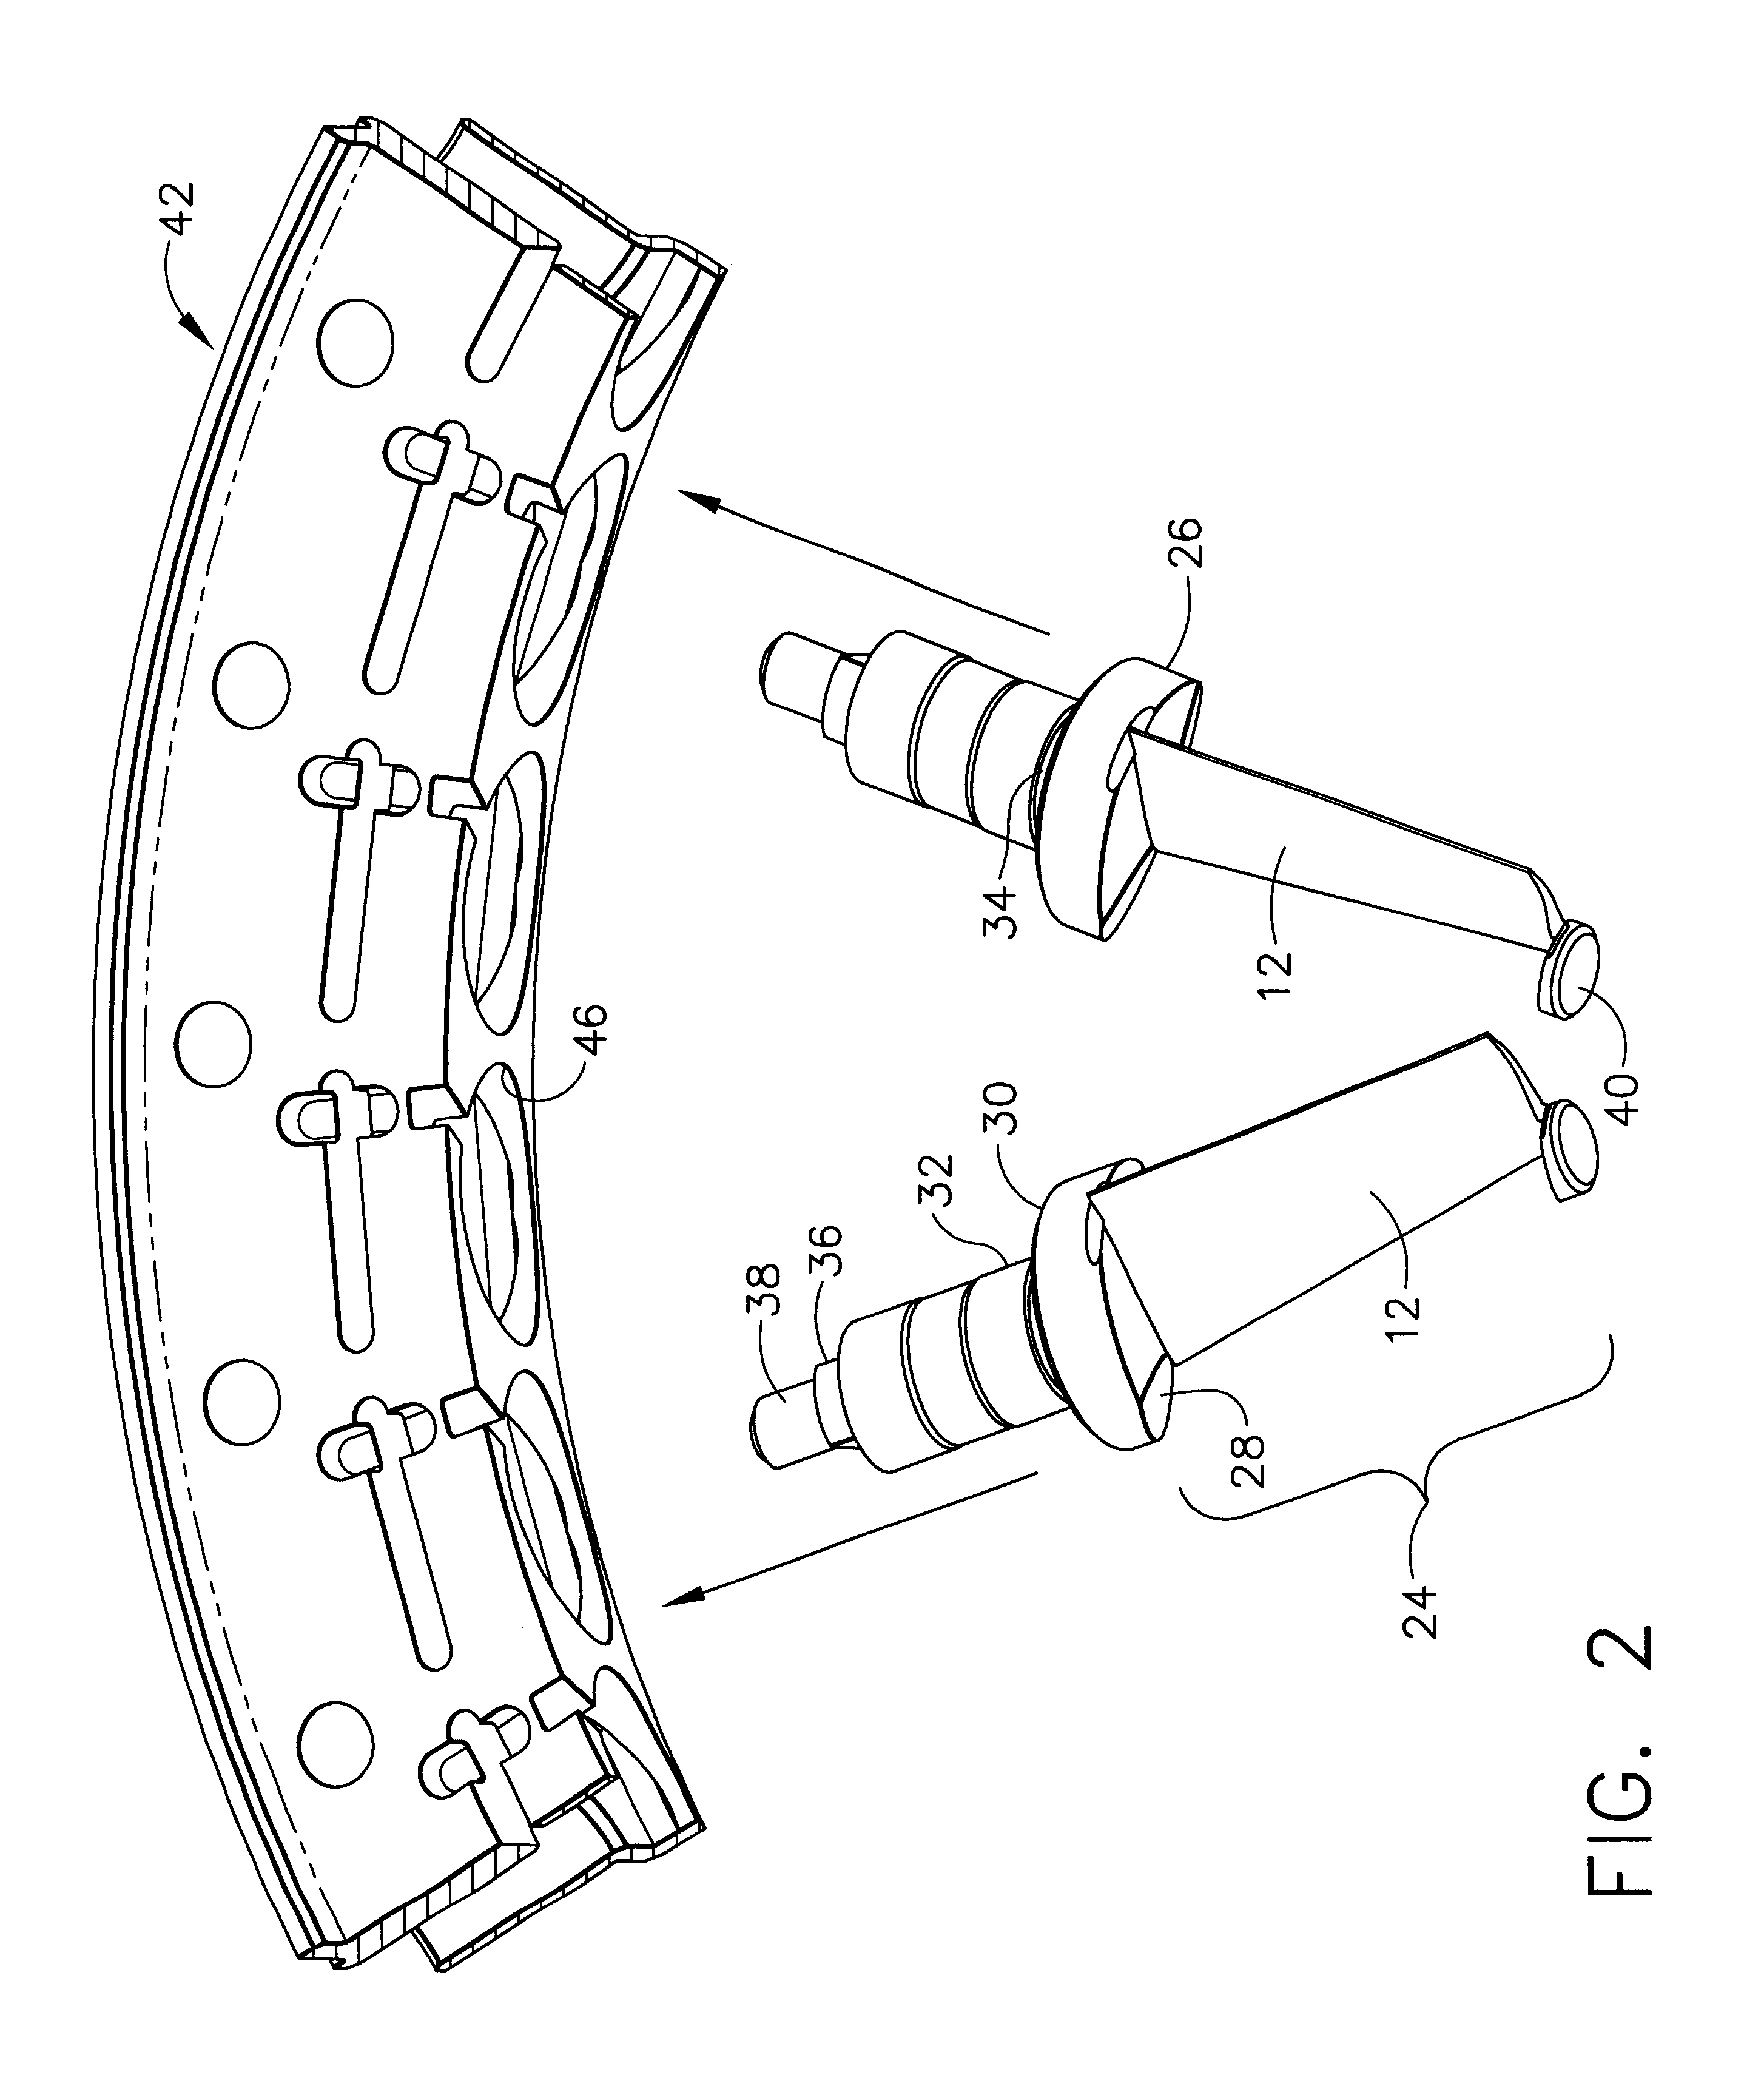 Vane radial mounting apparatus